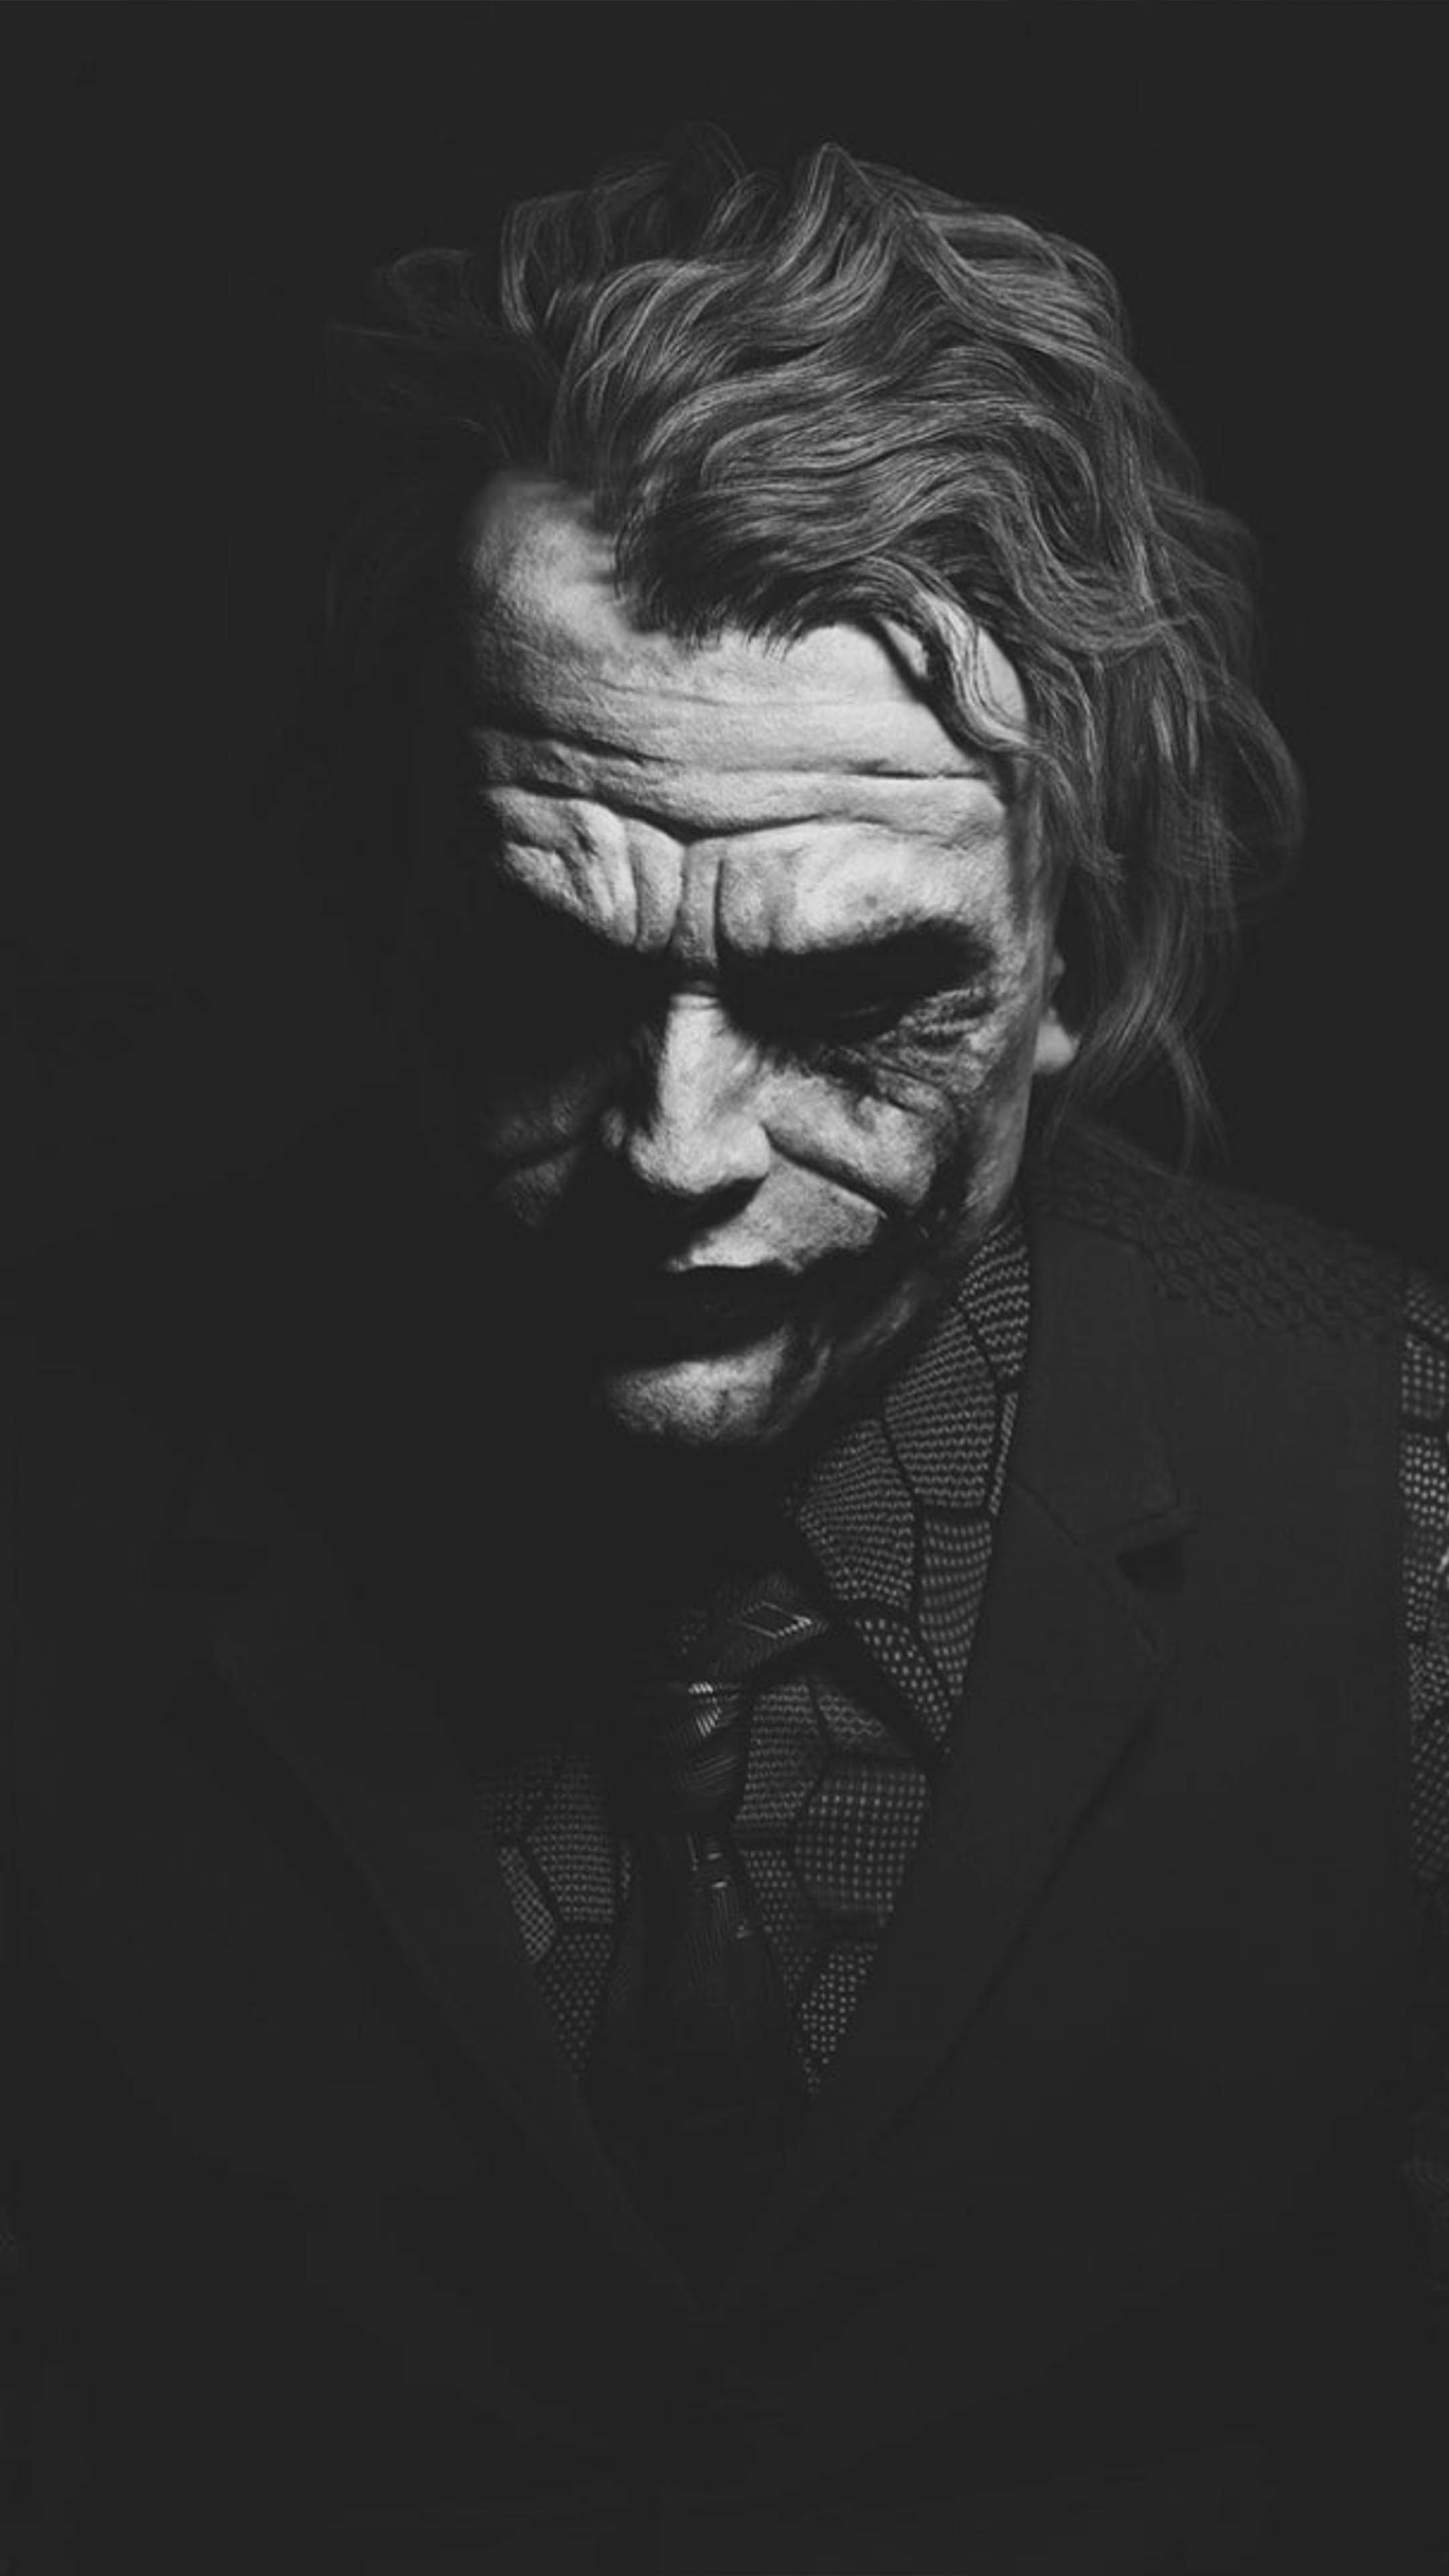 Heath Ledger Joker Black White Artwork 4k Ultra Hd Mobile Wallpaper